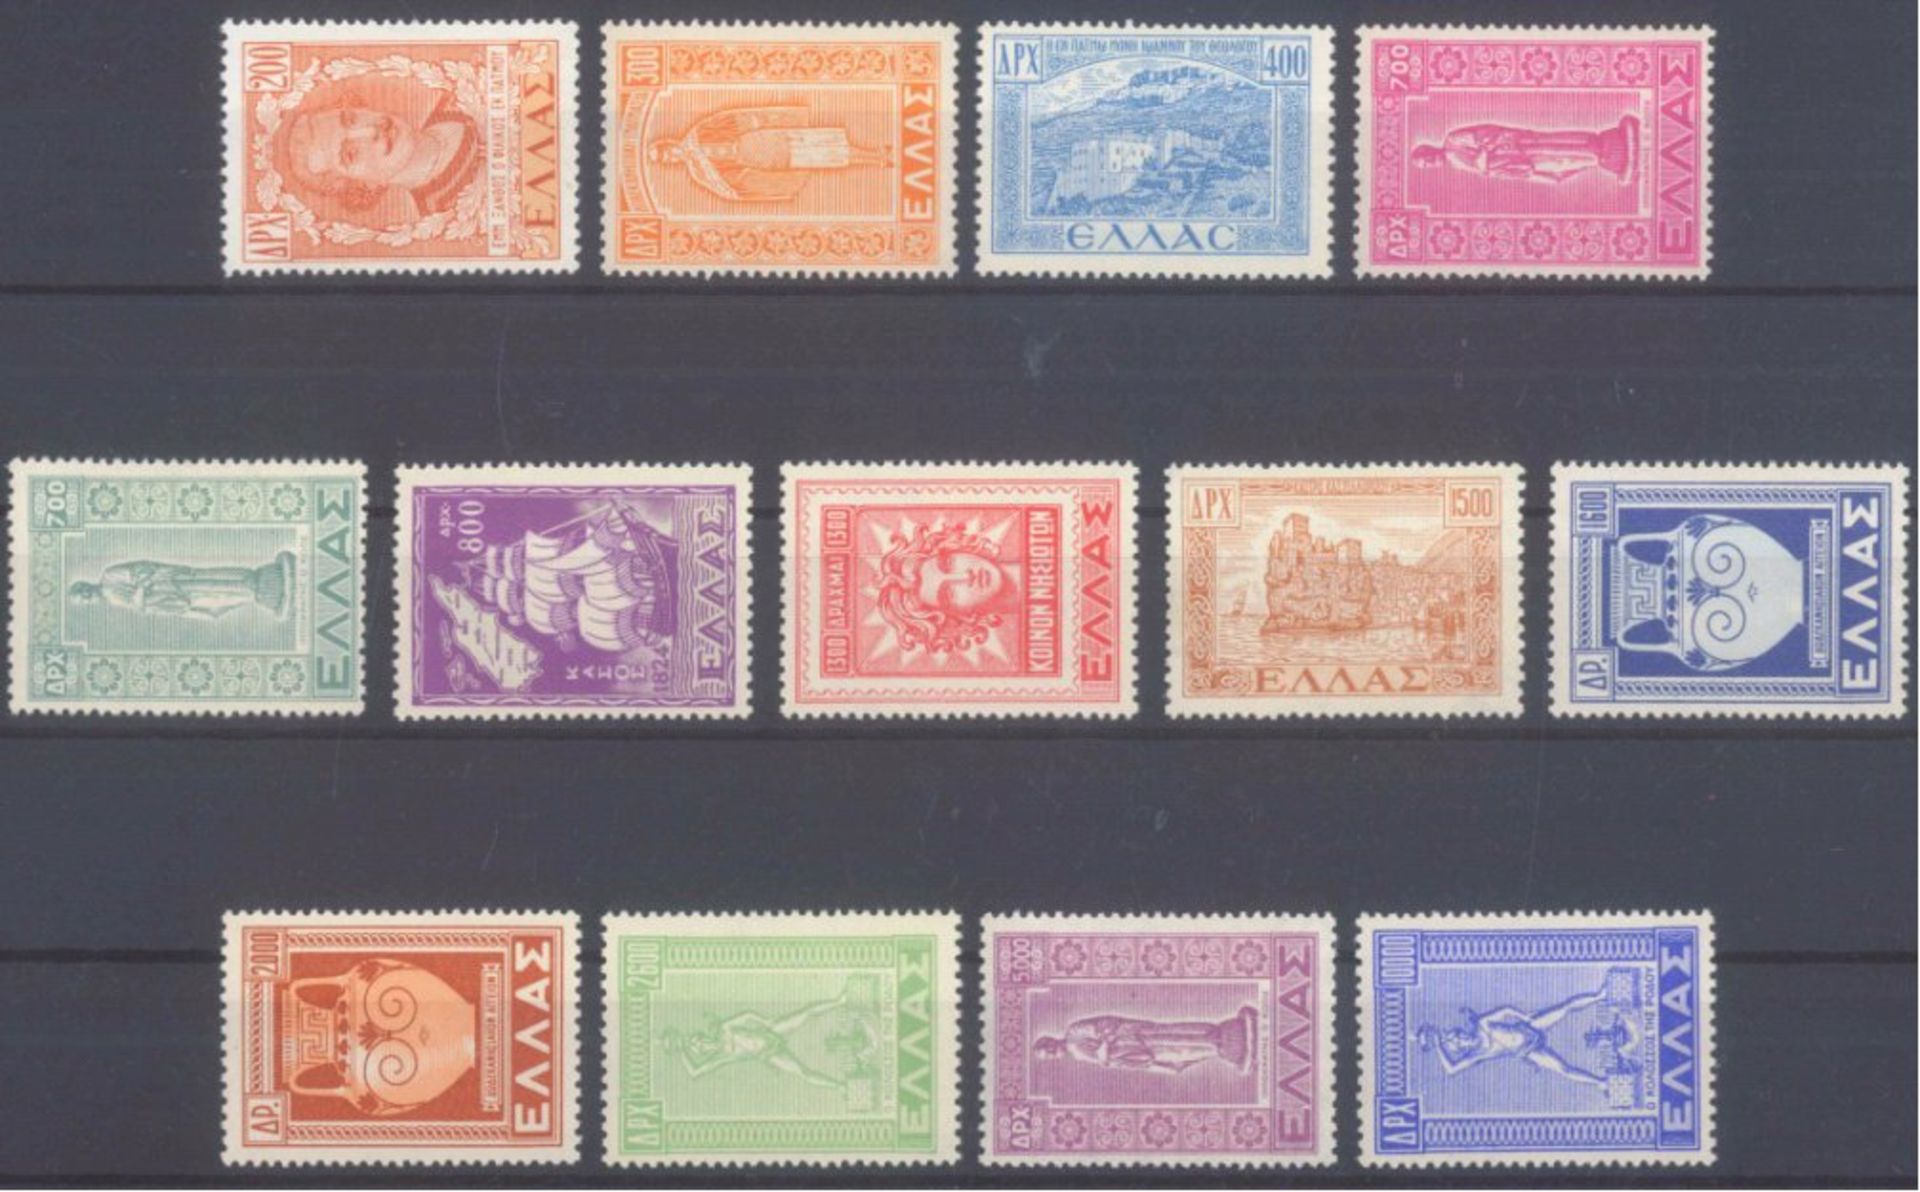 1950 GRIECHENLAND,Dodekanes-Freimarken,Katalogwert 450,-EuroMichelnummern 563-575, postfrisch